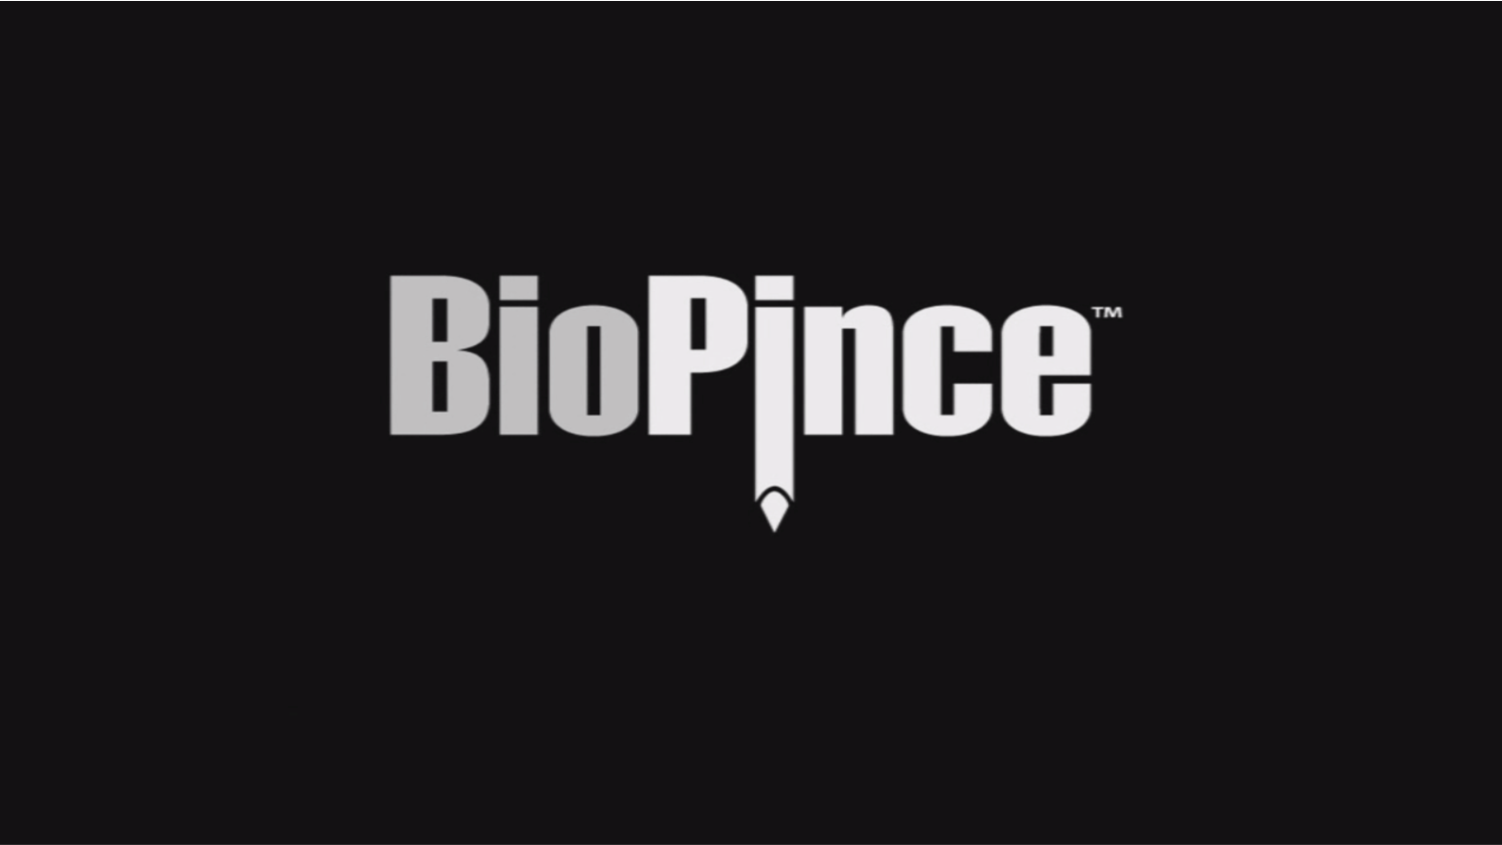 BioPince 全芯活檢針產品介紹及操作動畫說明